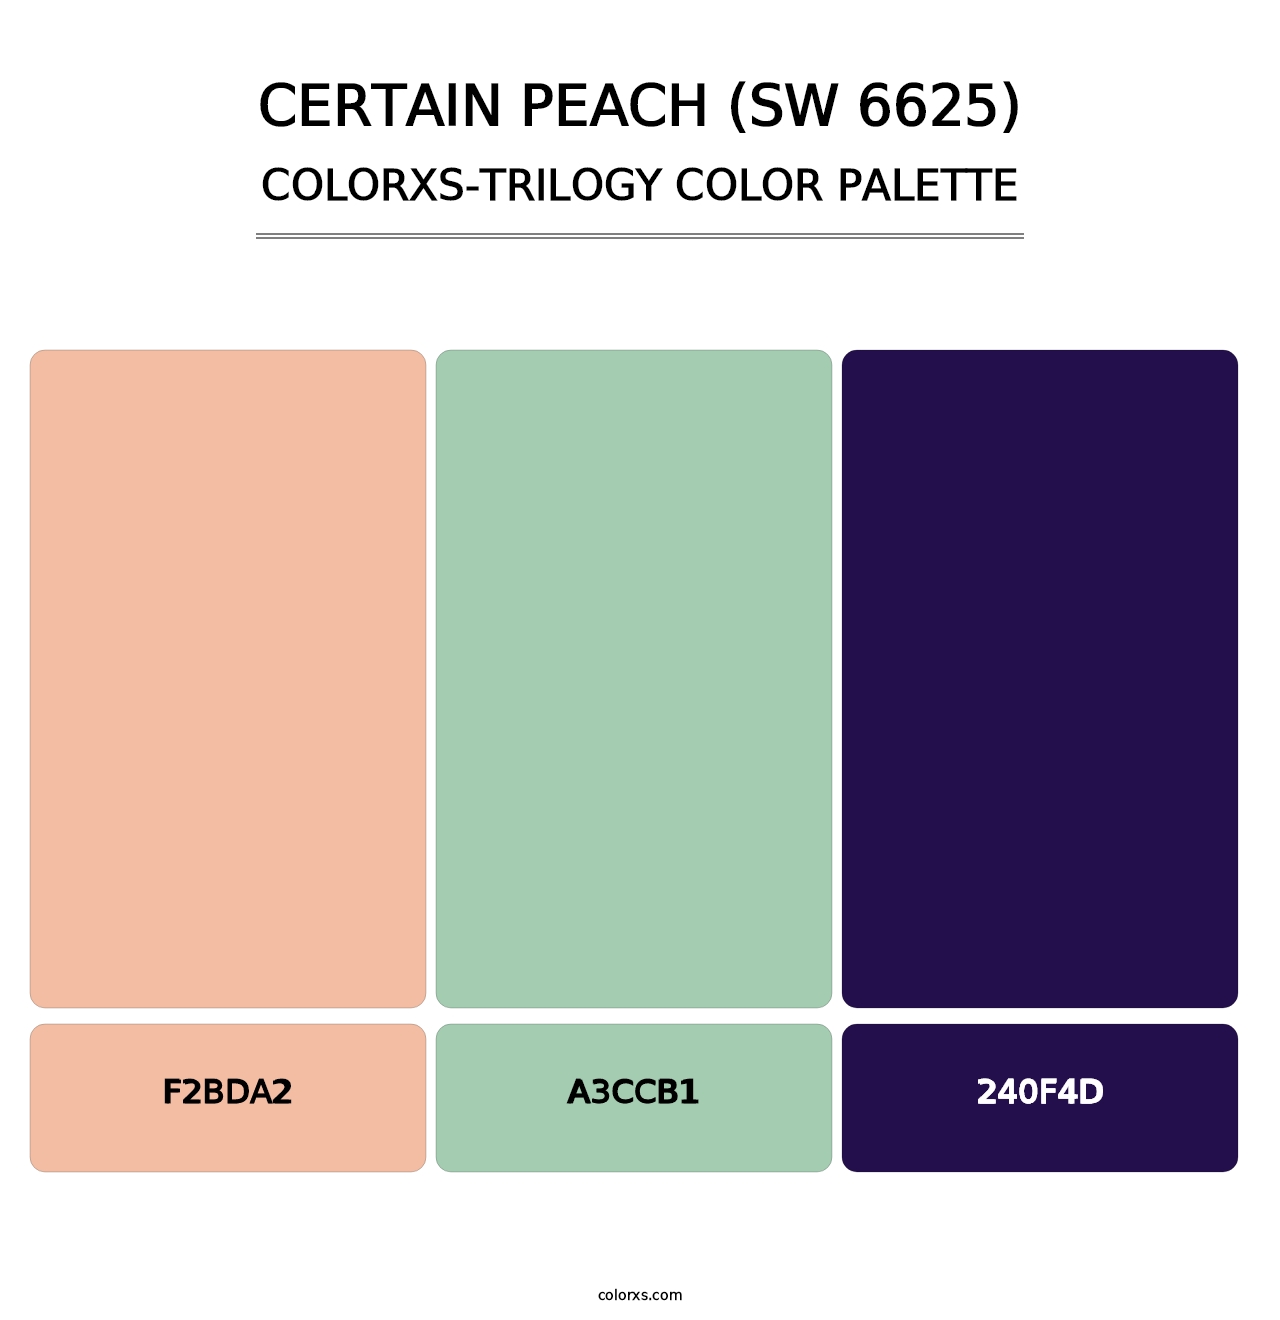 Certain Peach (SW 6625) - Colorxs Trilogy Palette